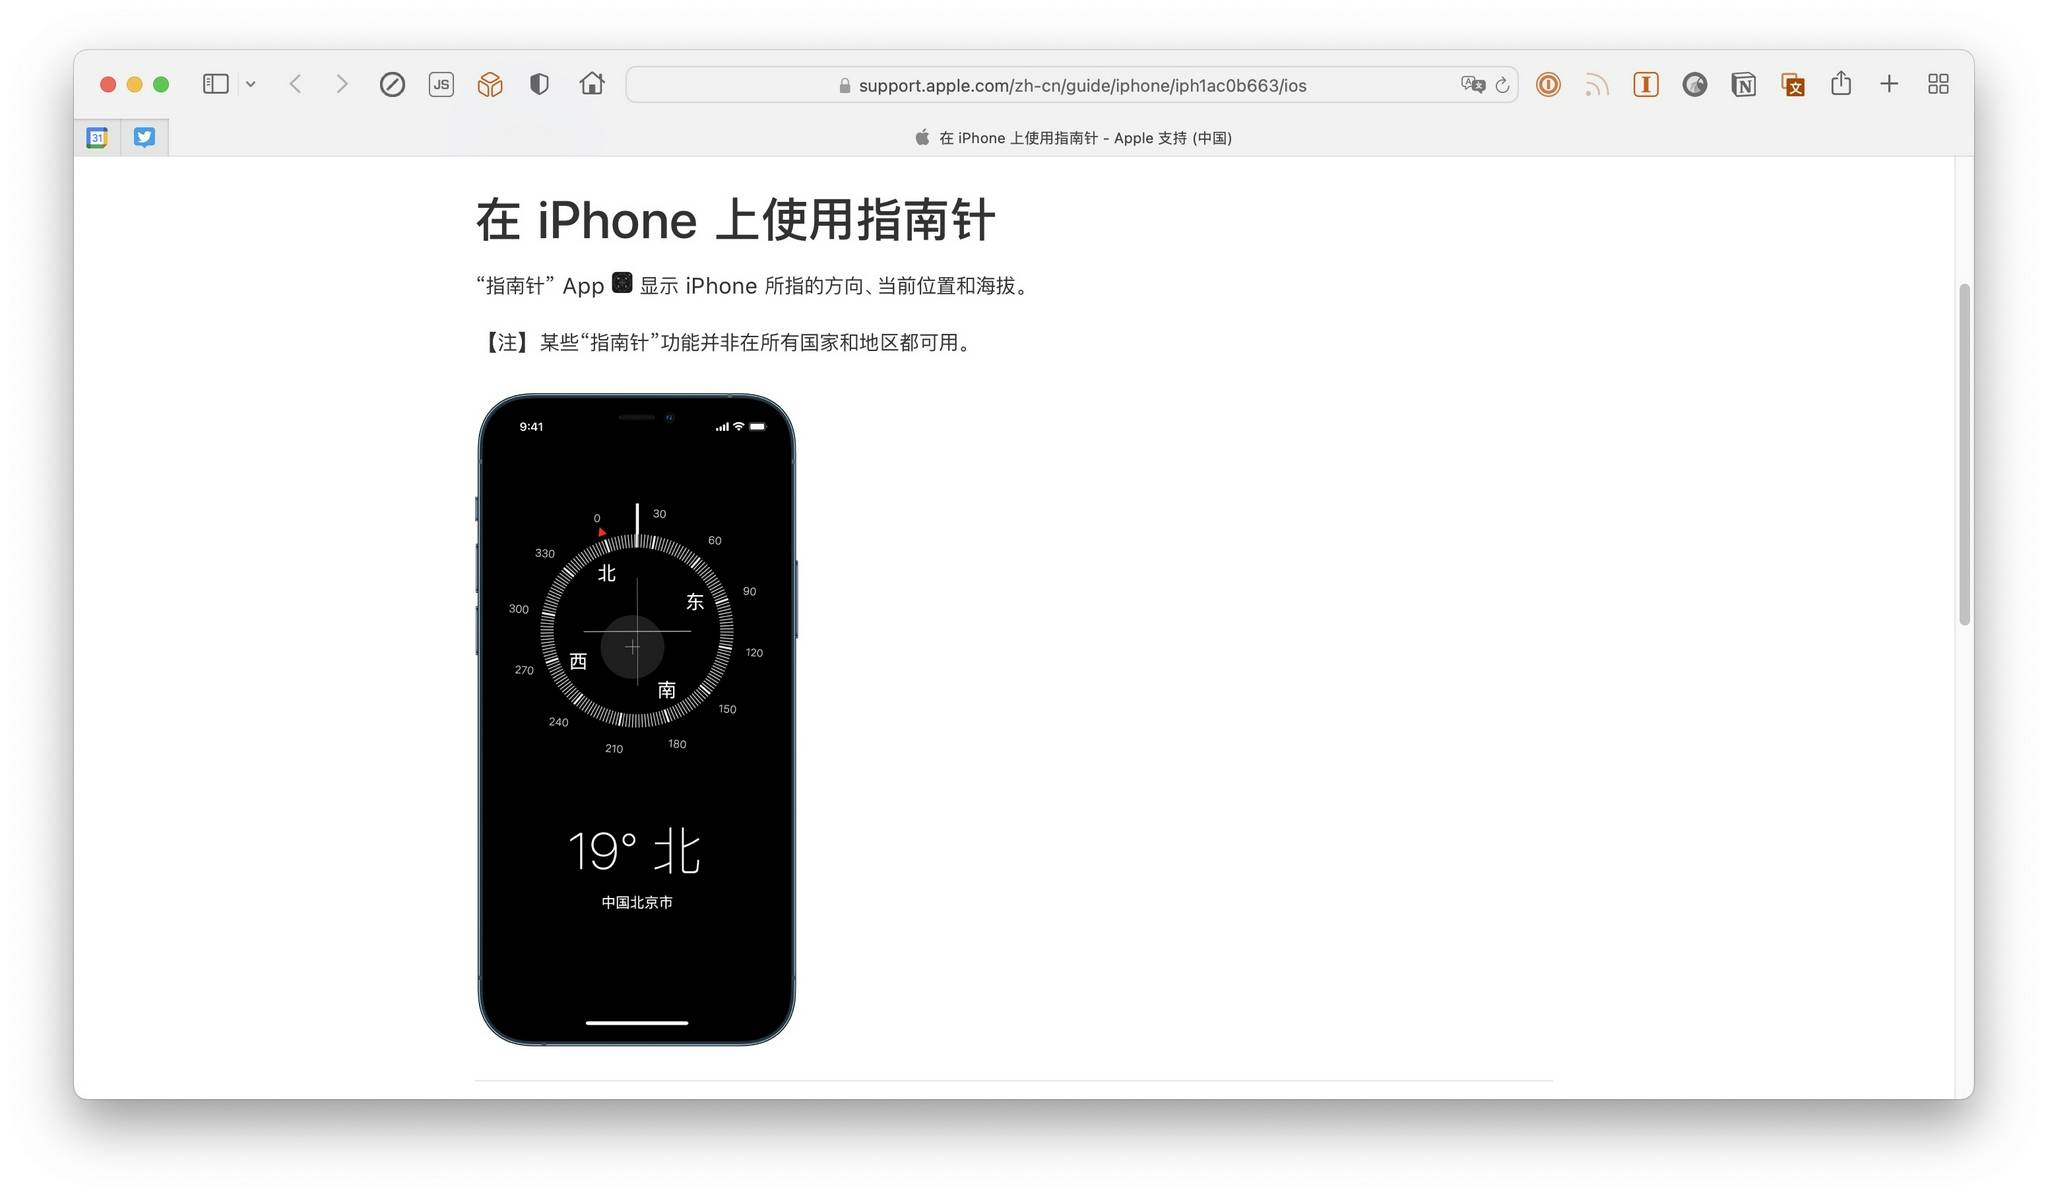 国家|苹果：iPhone 指南针应用某些功能并非在所有国家和地区都可用